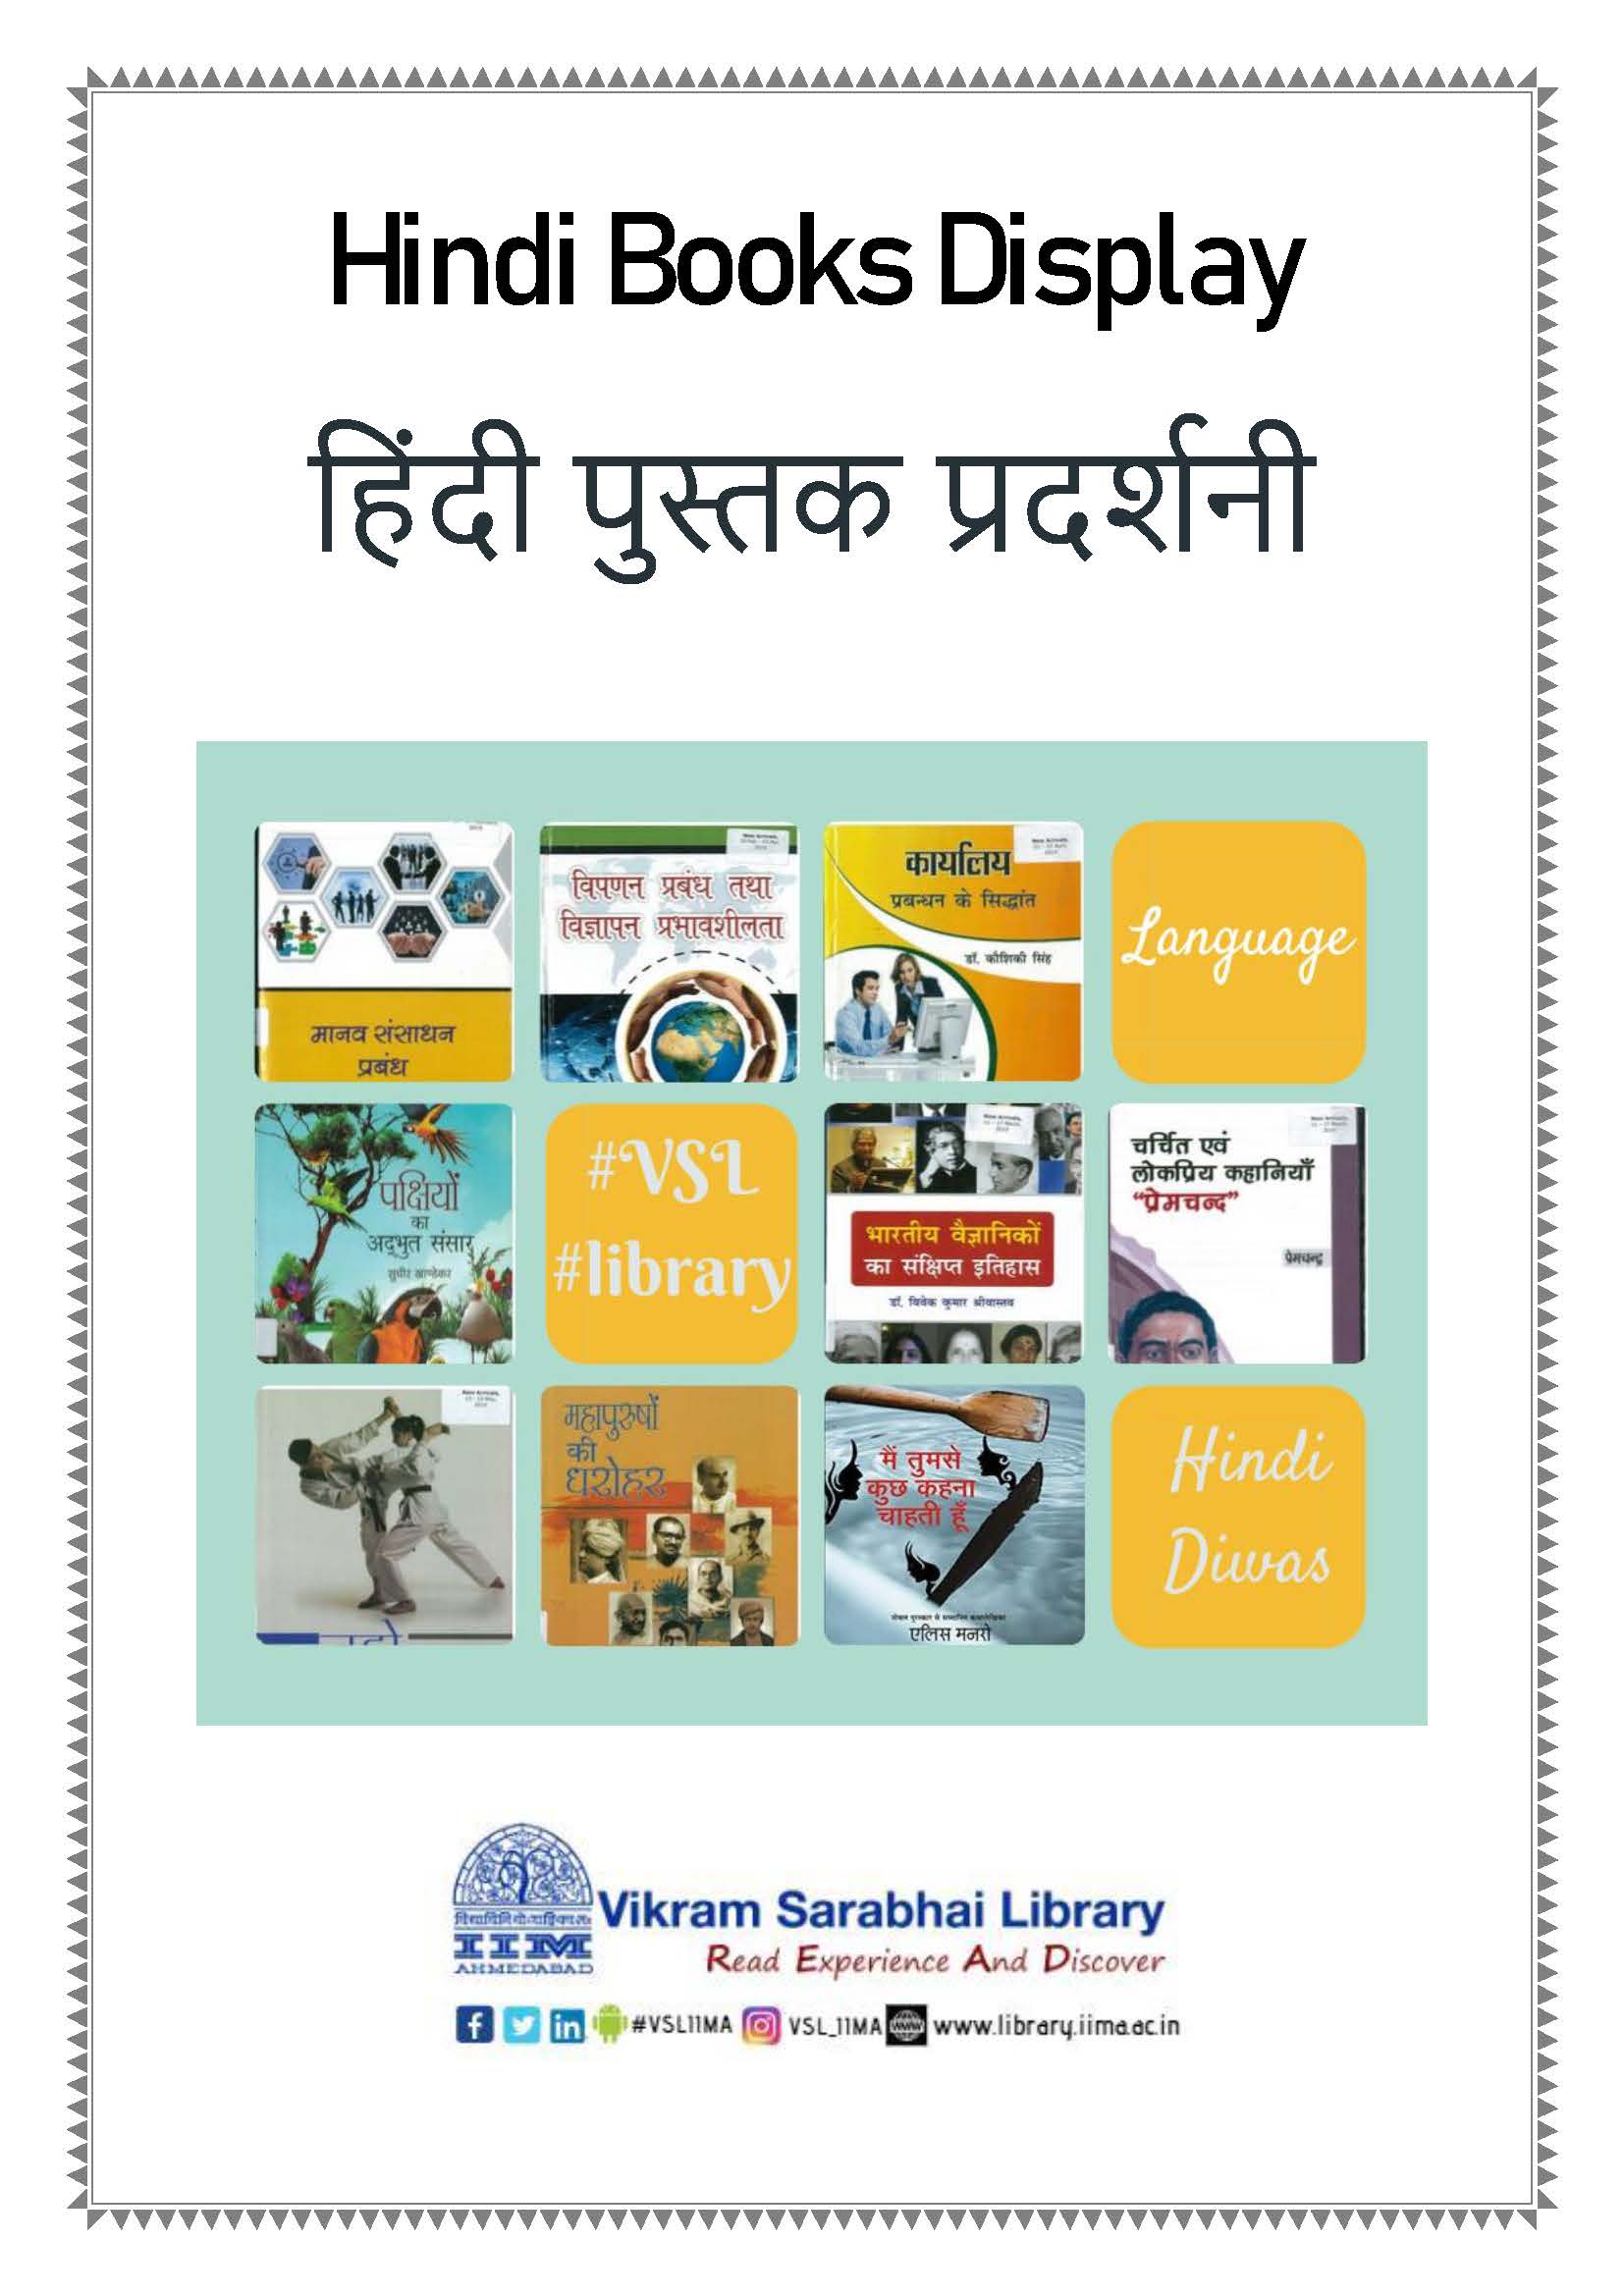 Hindi books display (2019)